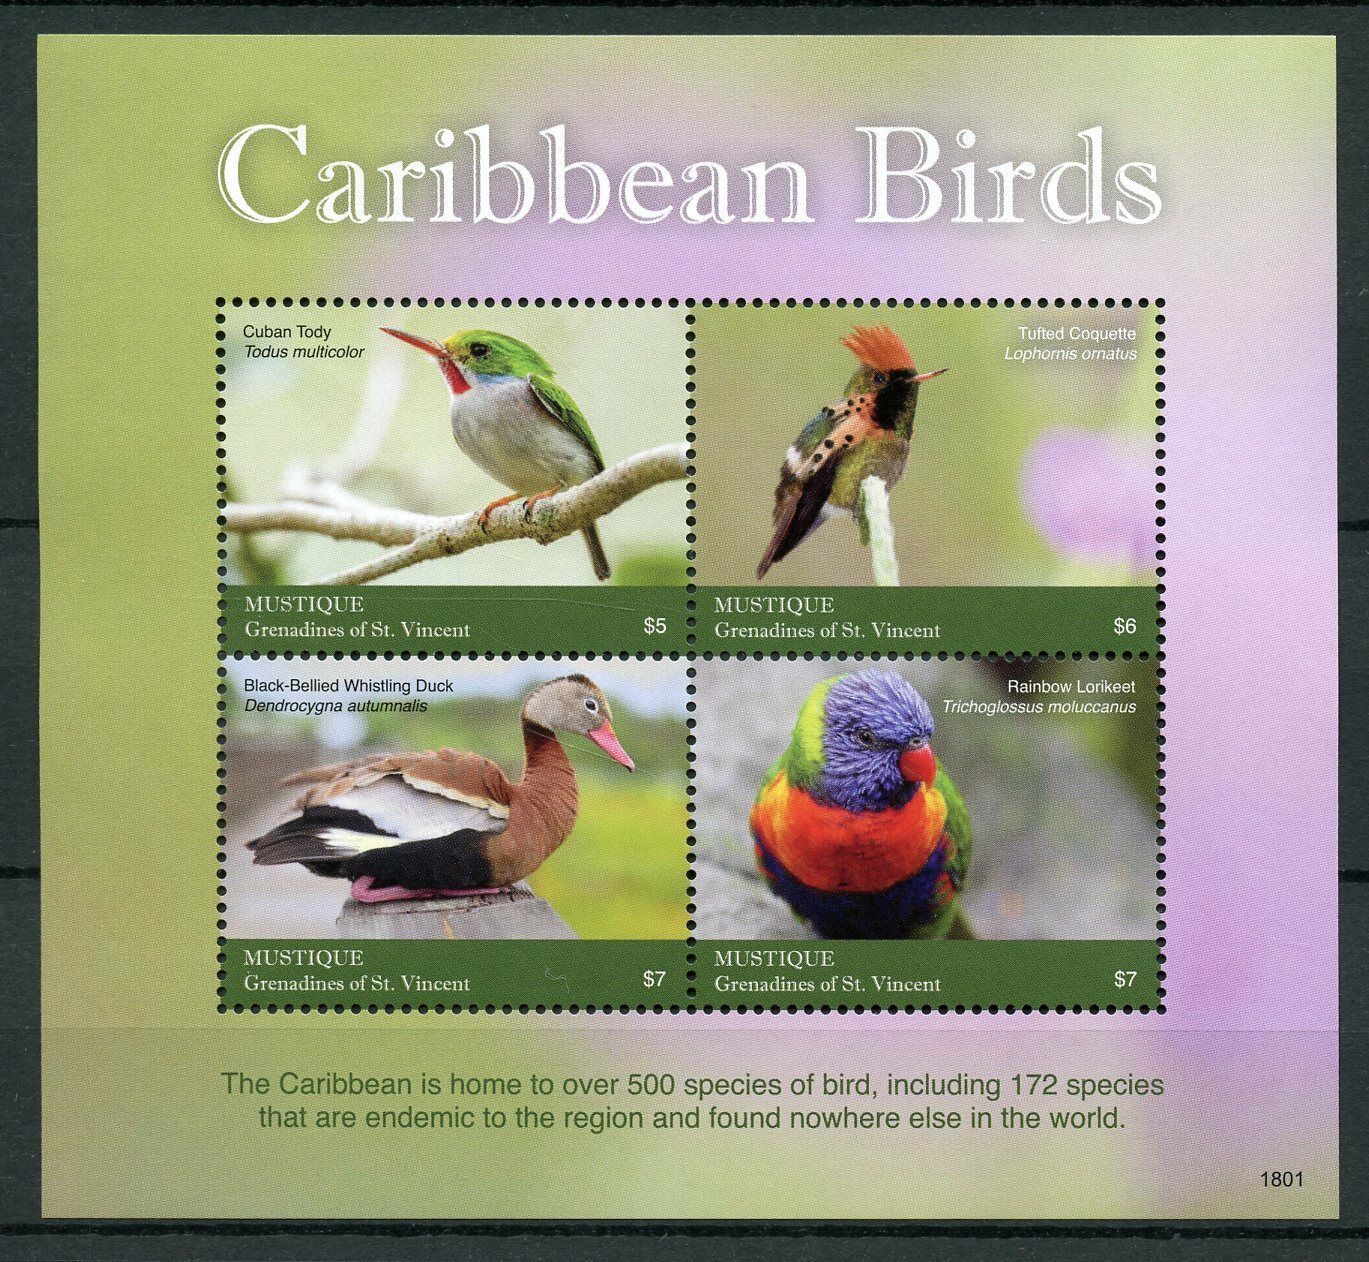 Mustique Grenadines St Vincent Stamps 2018 MNH Caribbean Birds Tody Ducks 4v M/S